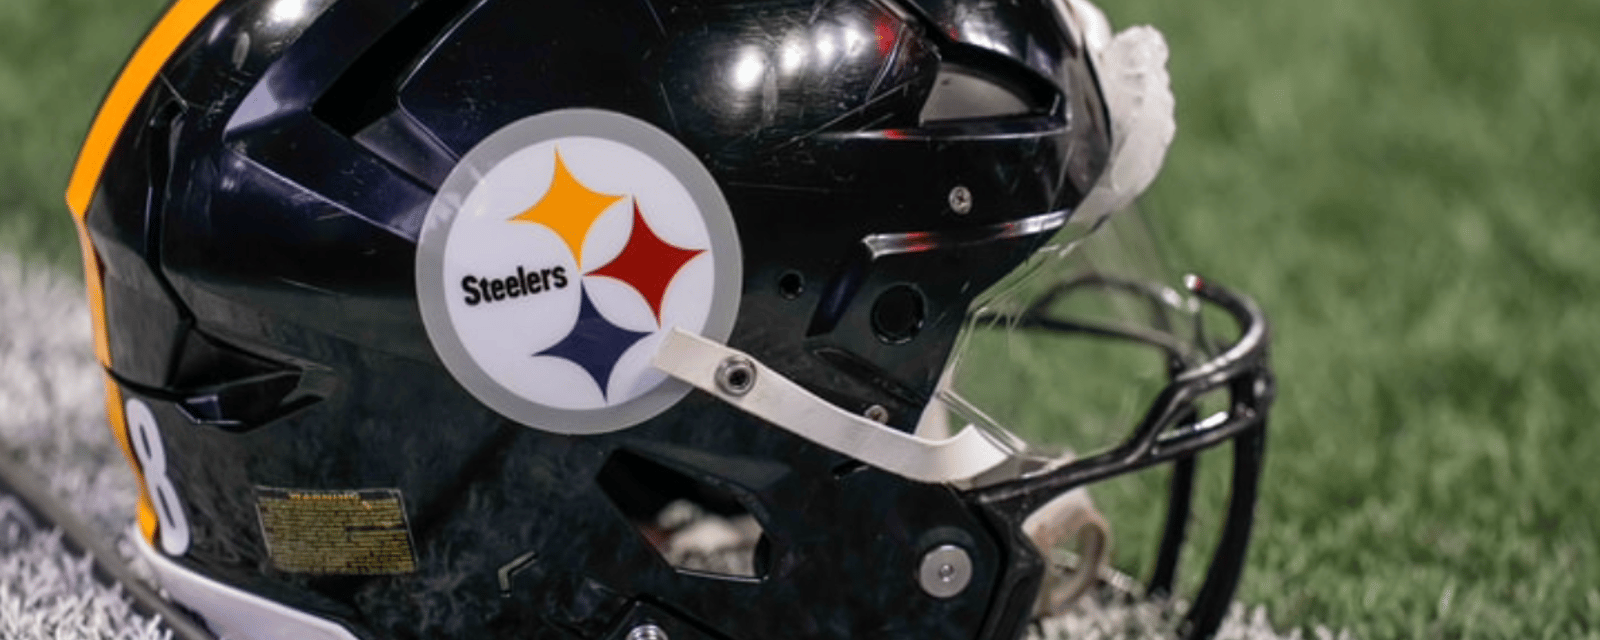 Critical Steelers injury report released before Week 3 